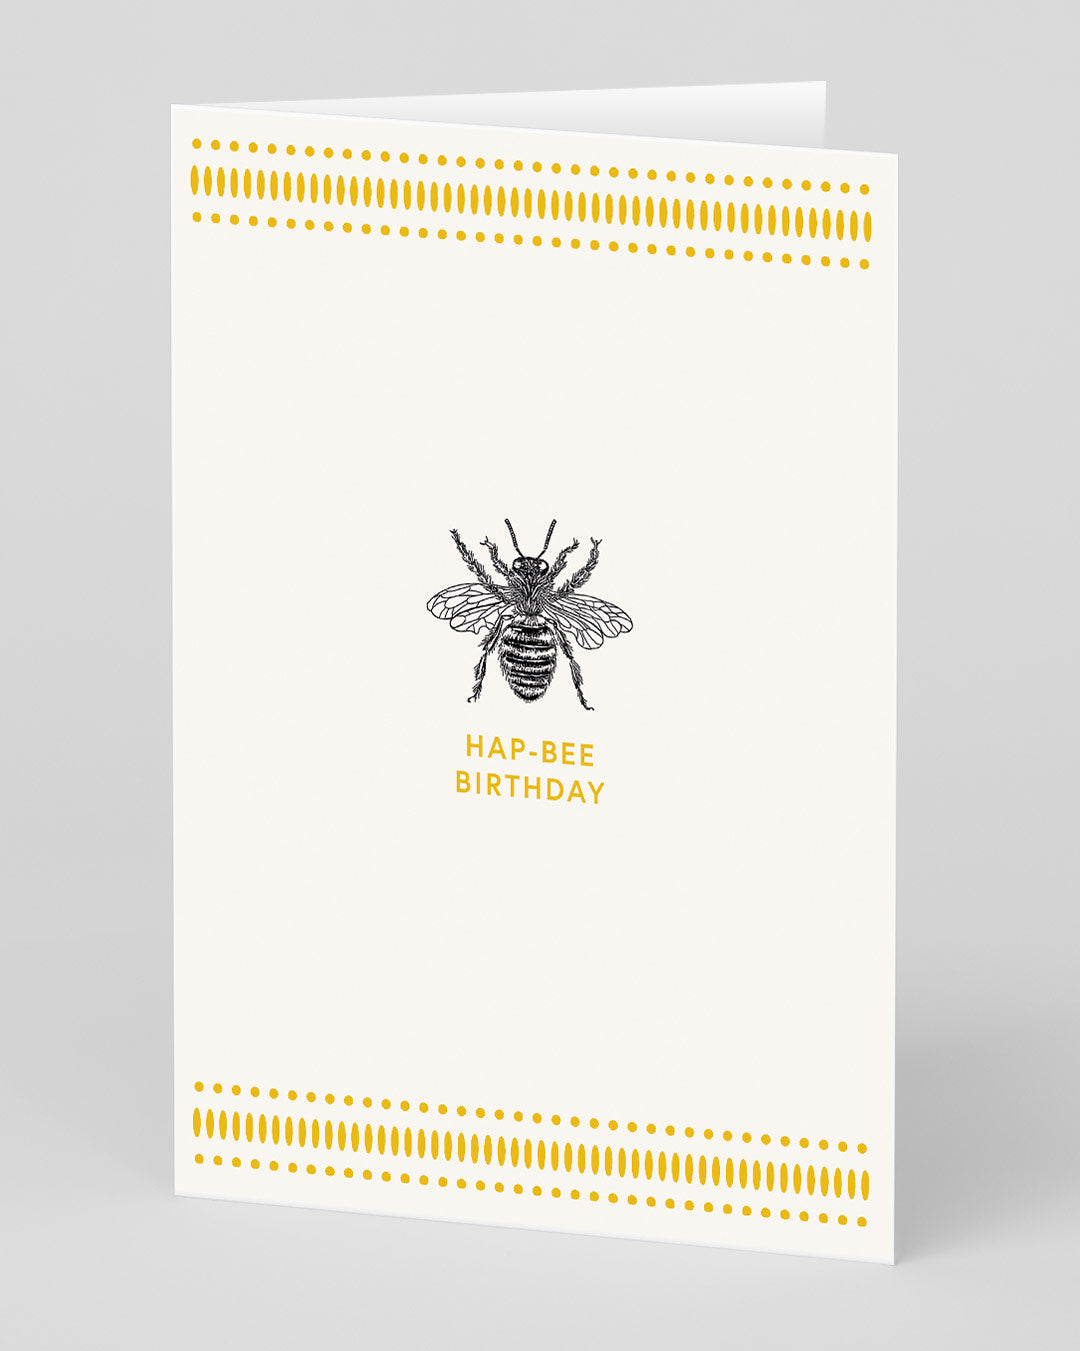 Birthday Card Hap-Bee Birthday Card